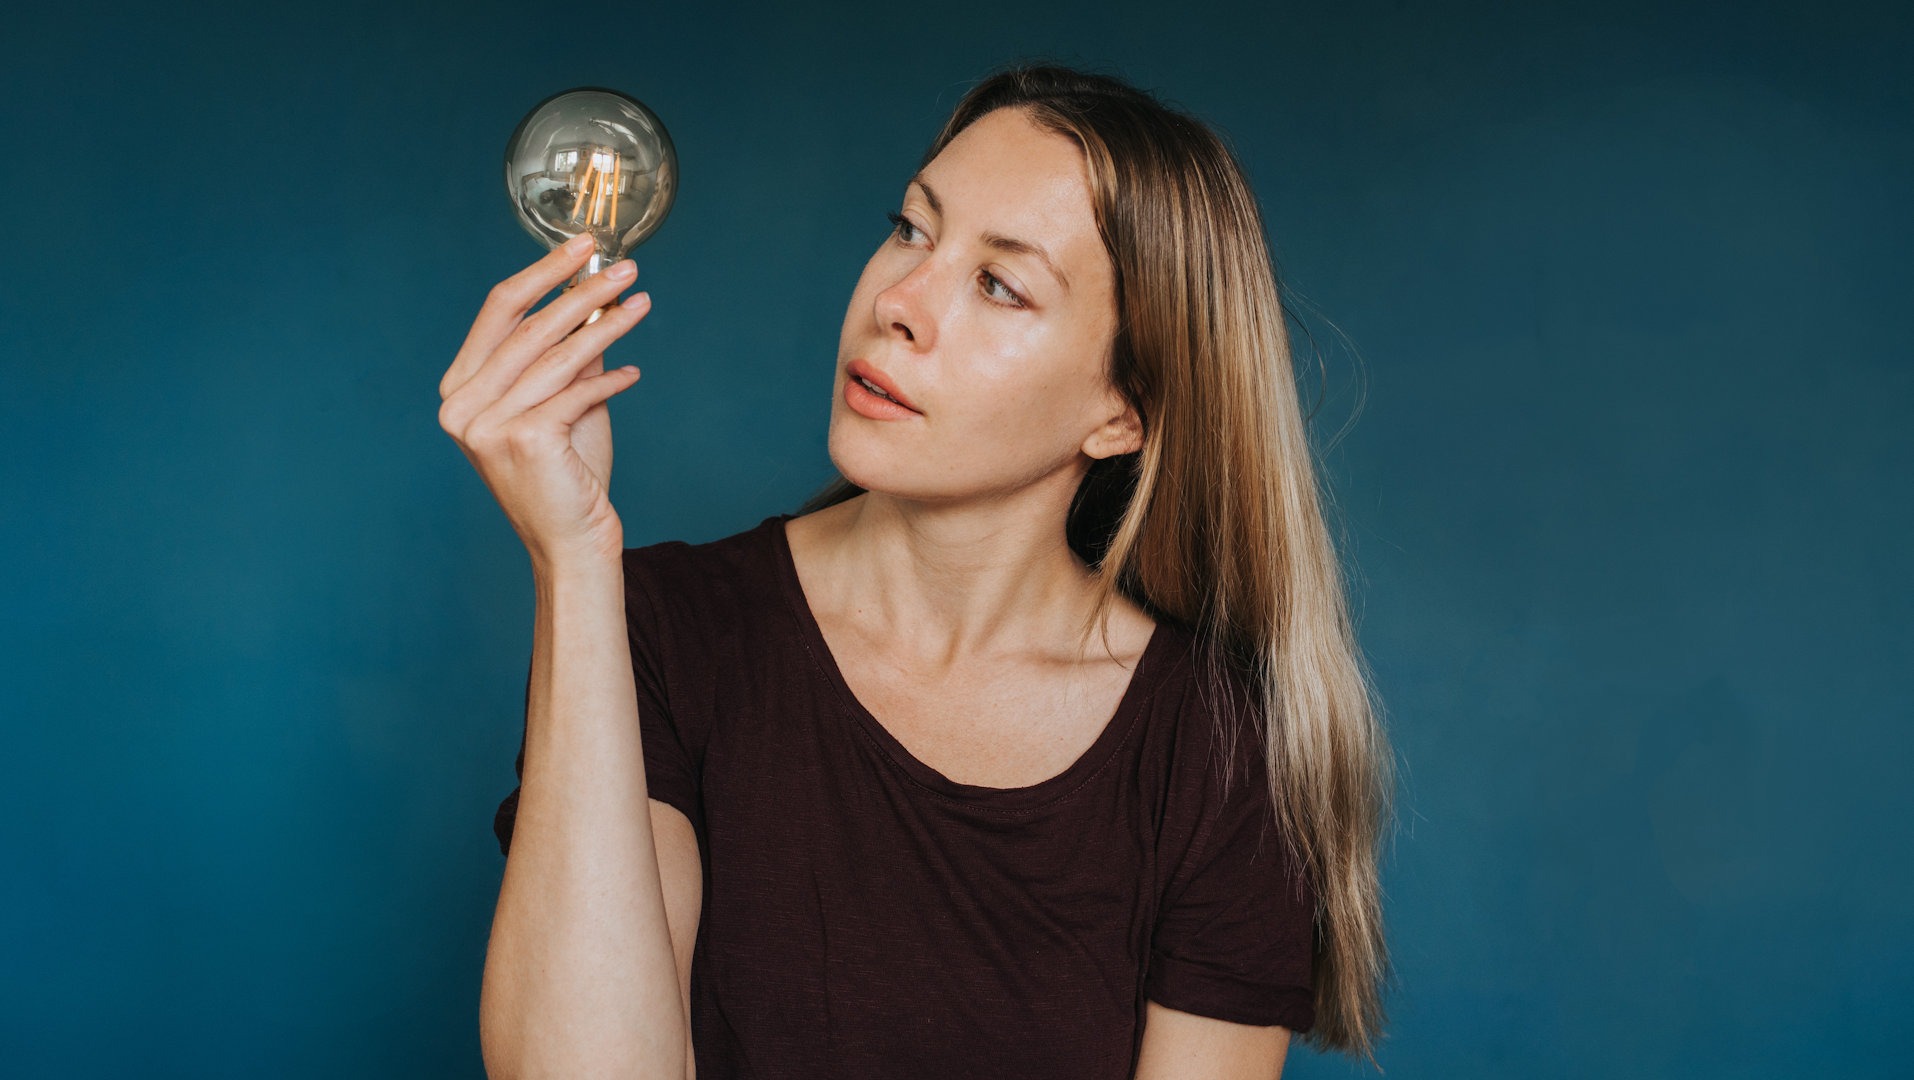 Une femme tient une ampoule devant un fond bleu et a l’air méditative.